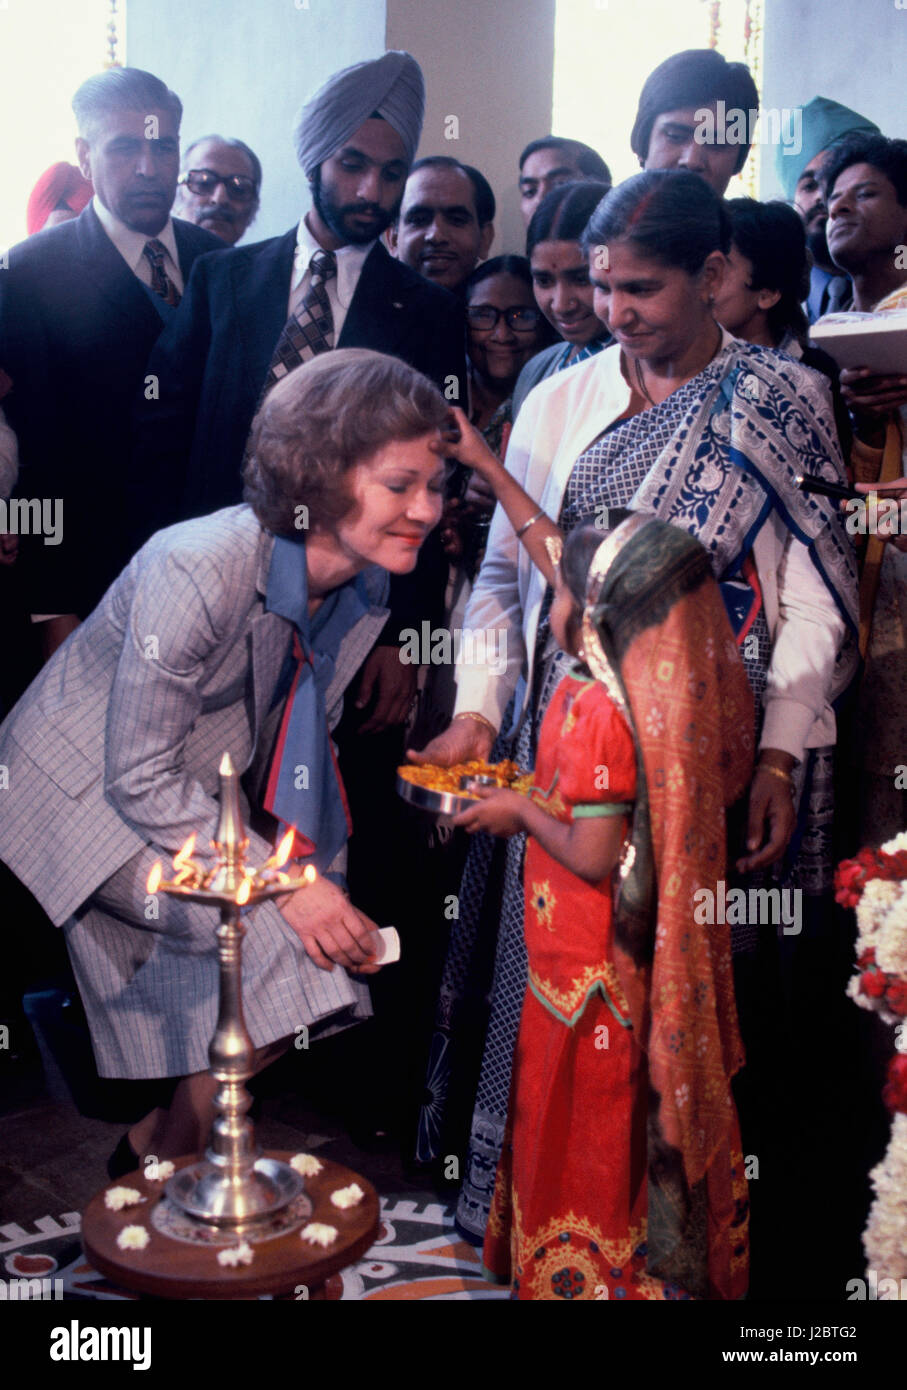 Rosalyn Carter Indien erhält die traditionelle Begrüßung eines Kindes platzieren eine rote Markierung auf der Stirn. Präsident Carter besucht Indien am 1. Januar 1978 Stockfoto